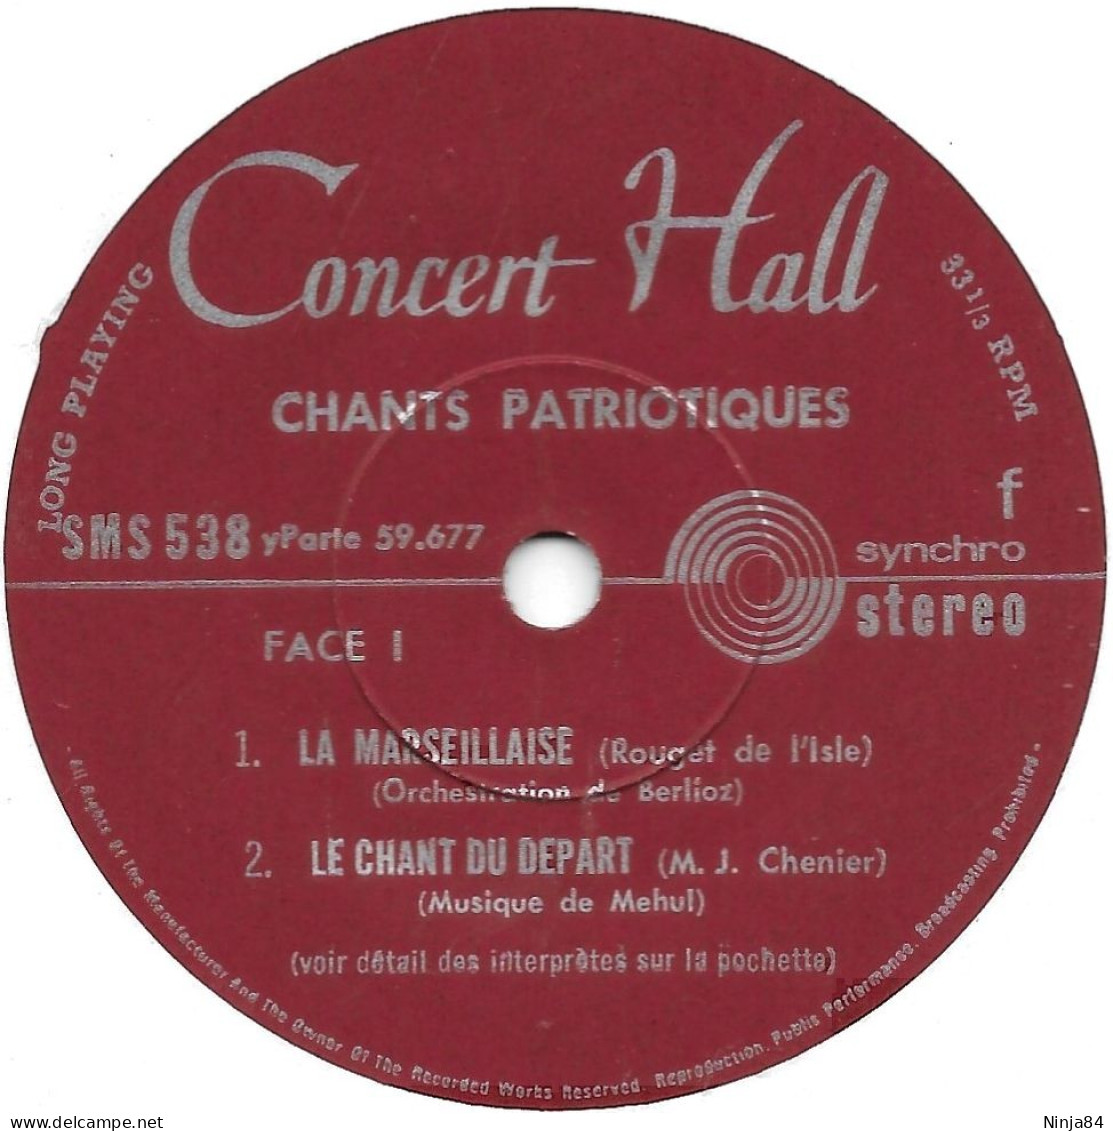 EP 45 RPM (7") Artistes Divers  "  Chants Patriotiques  " - Autres - Musique Française